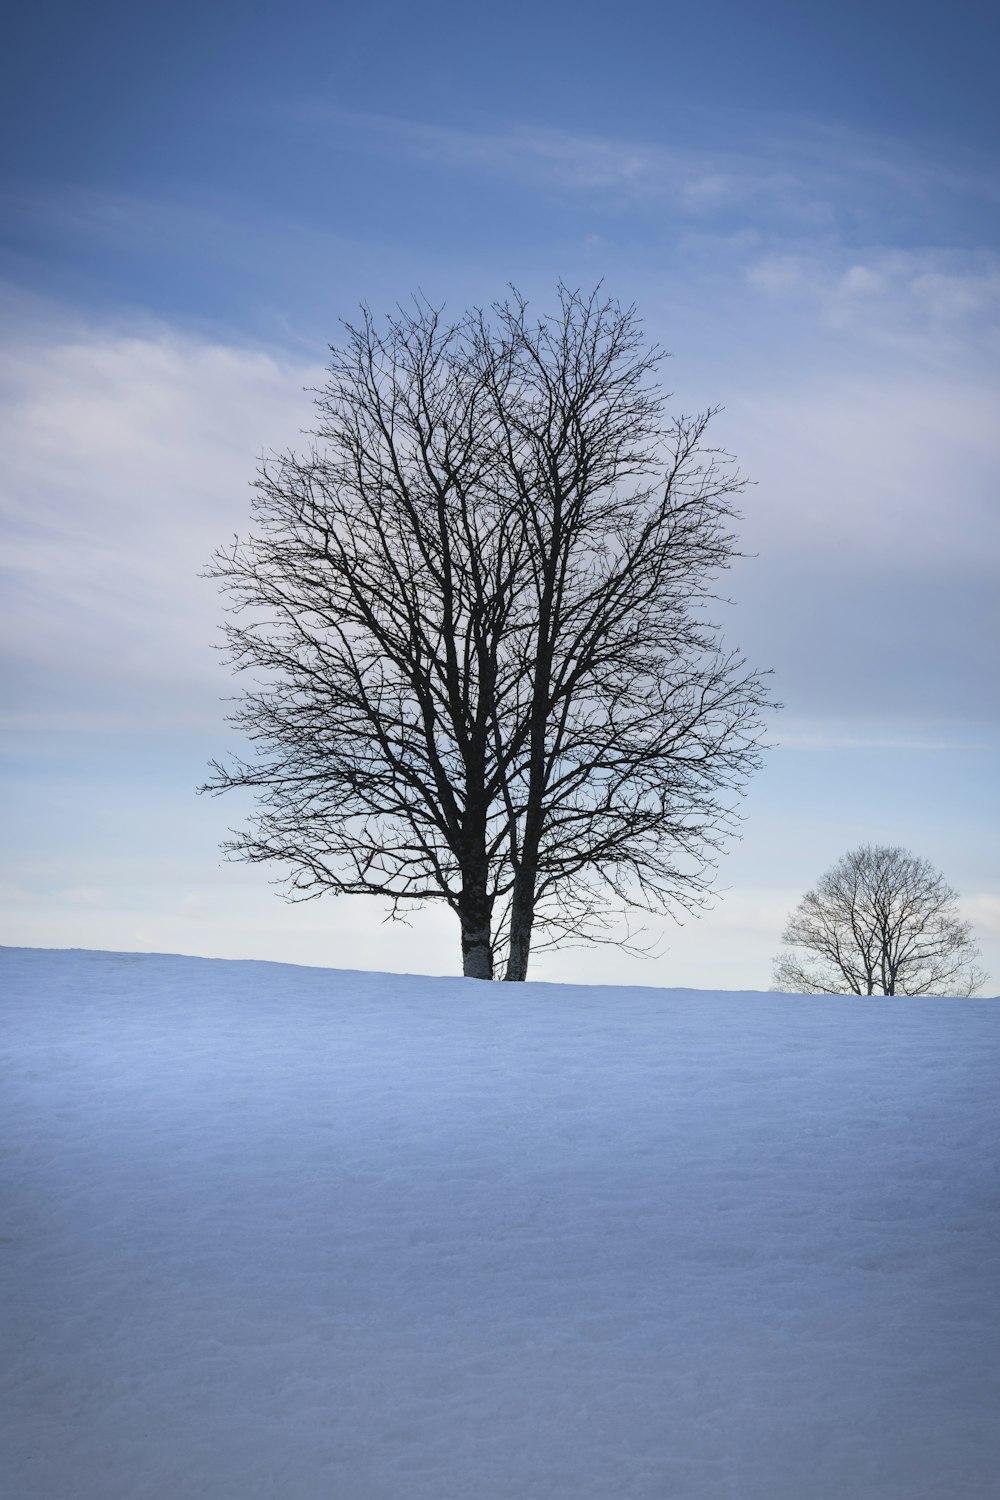 Un arbre solitaire se dresse au milieu d’un champ enneigé